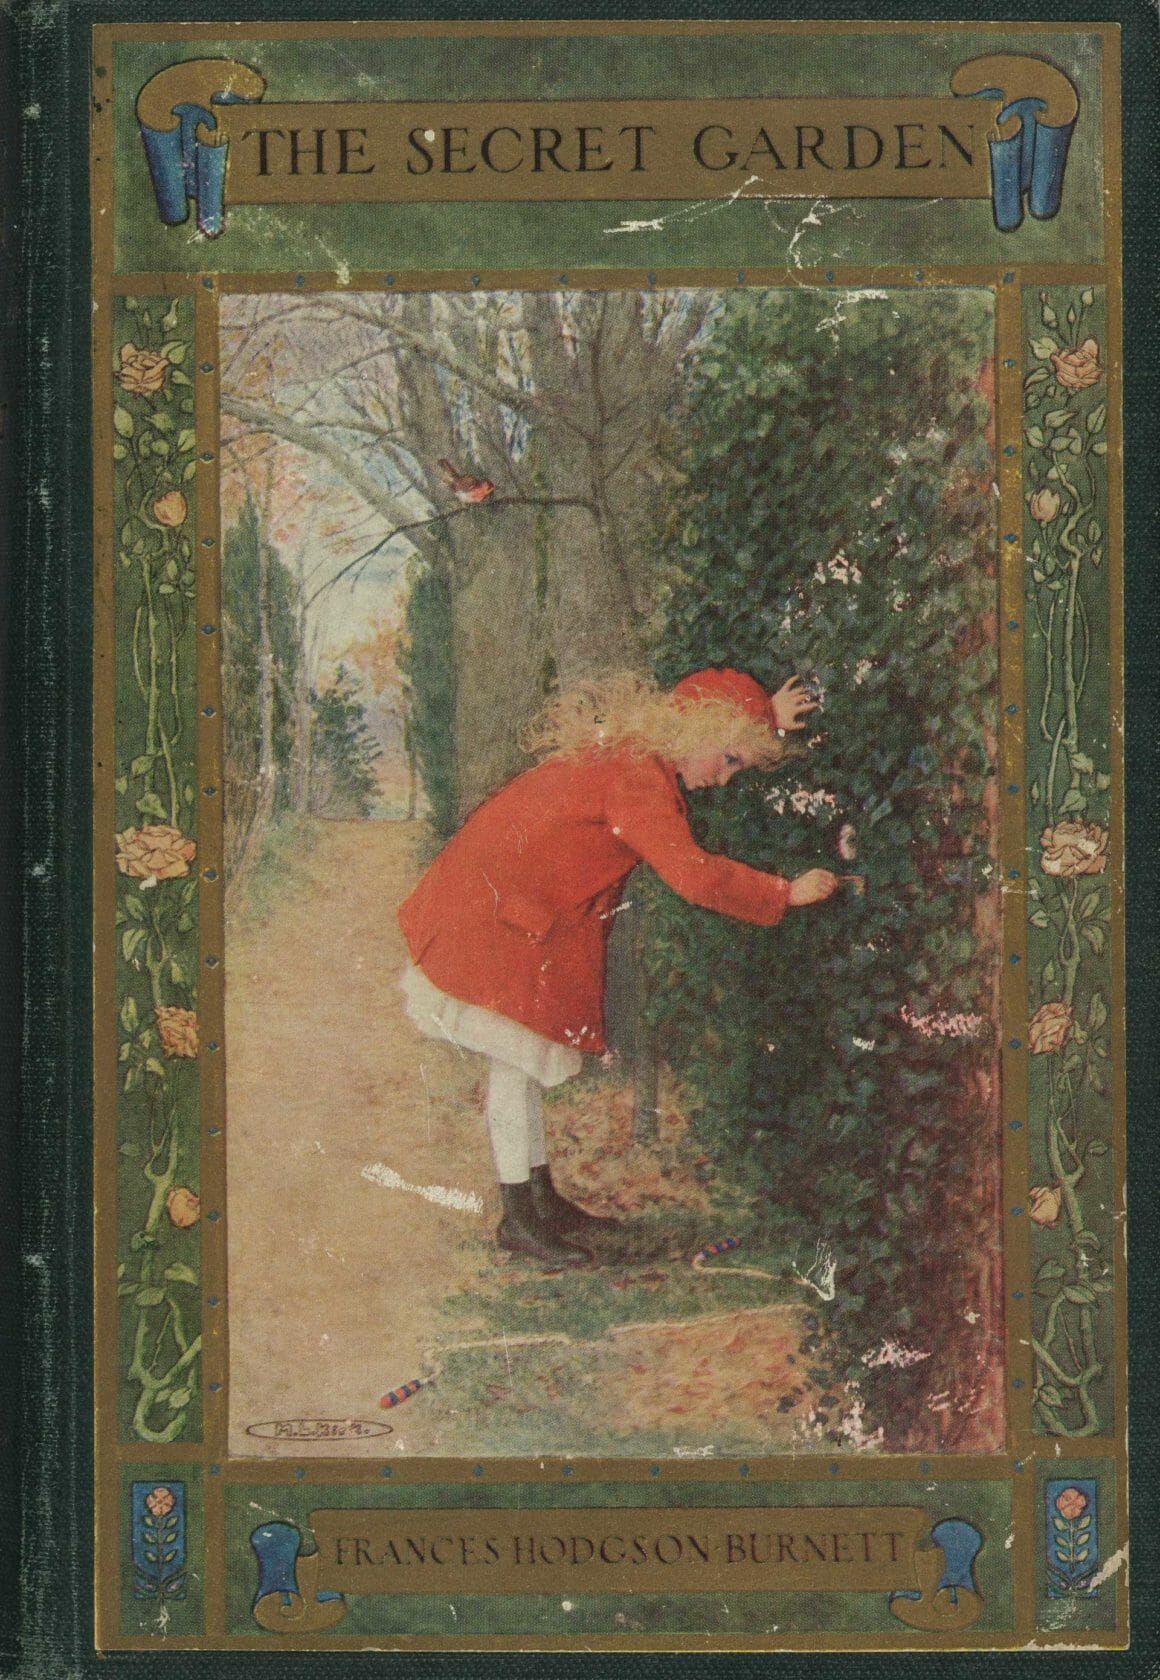 หนังสือ ‘ในสวนลับ’ (The Secret Garden) โดย ฟรานเซส ฮอดจ์สัน เบอร์เนทท์ แต่งขึ้นในปี 1911